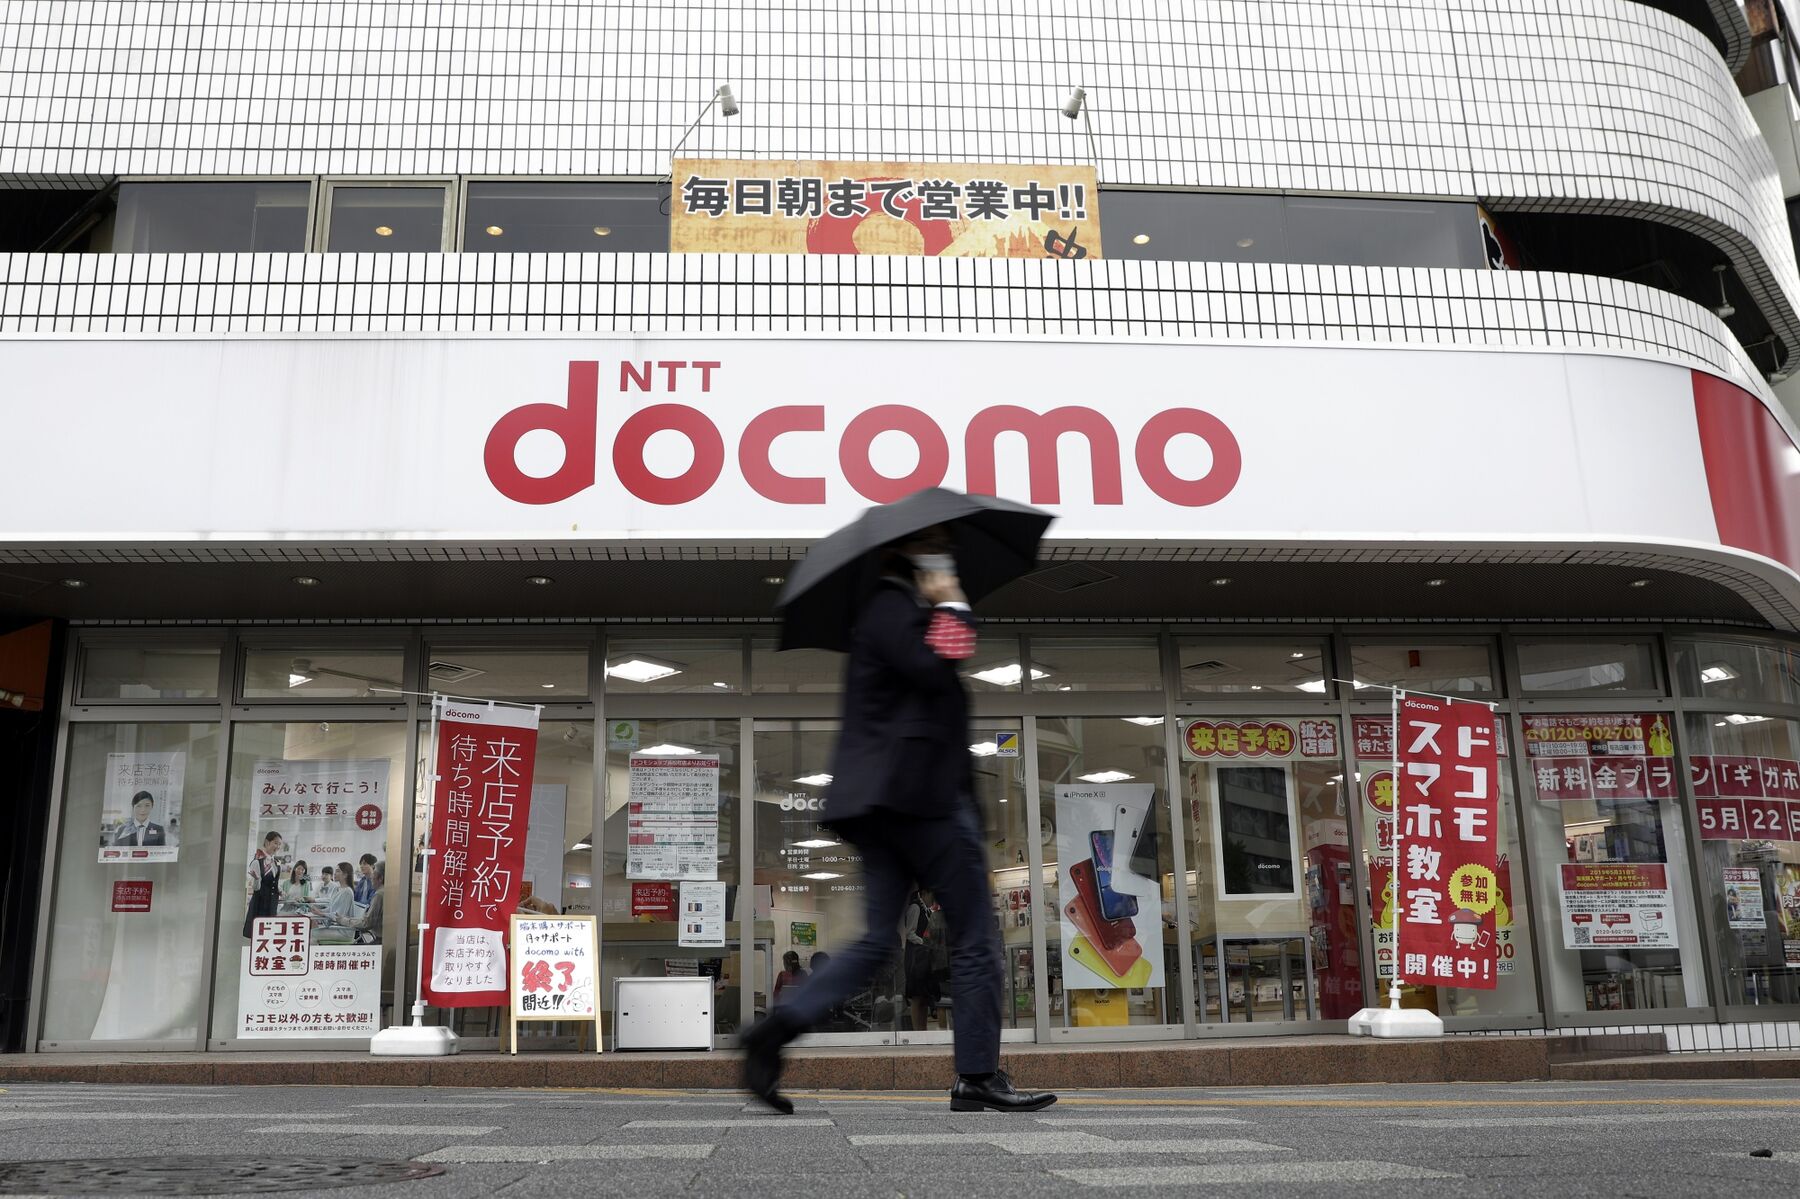 A pedestrian holding an umbrella walks past an NTT Docomo Inc. store in Tokyo, Japan.